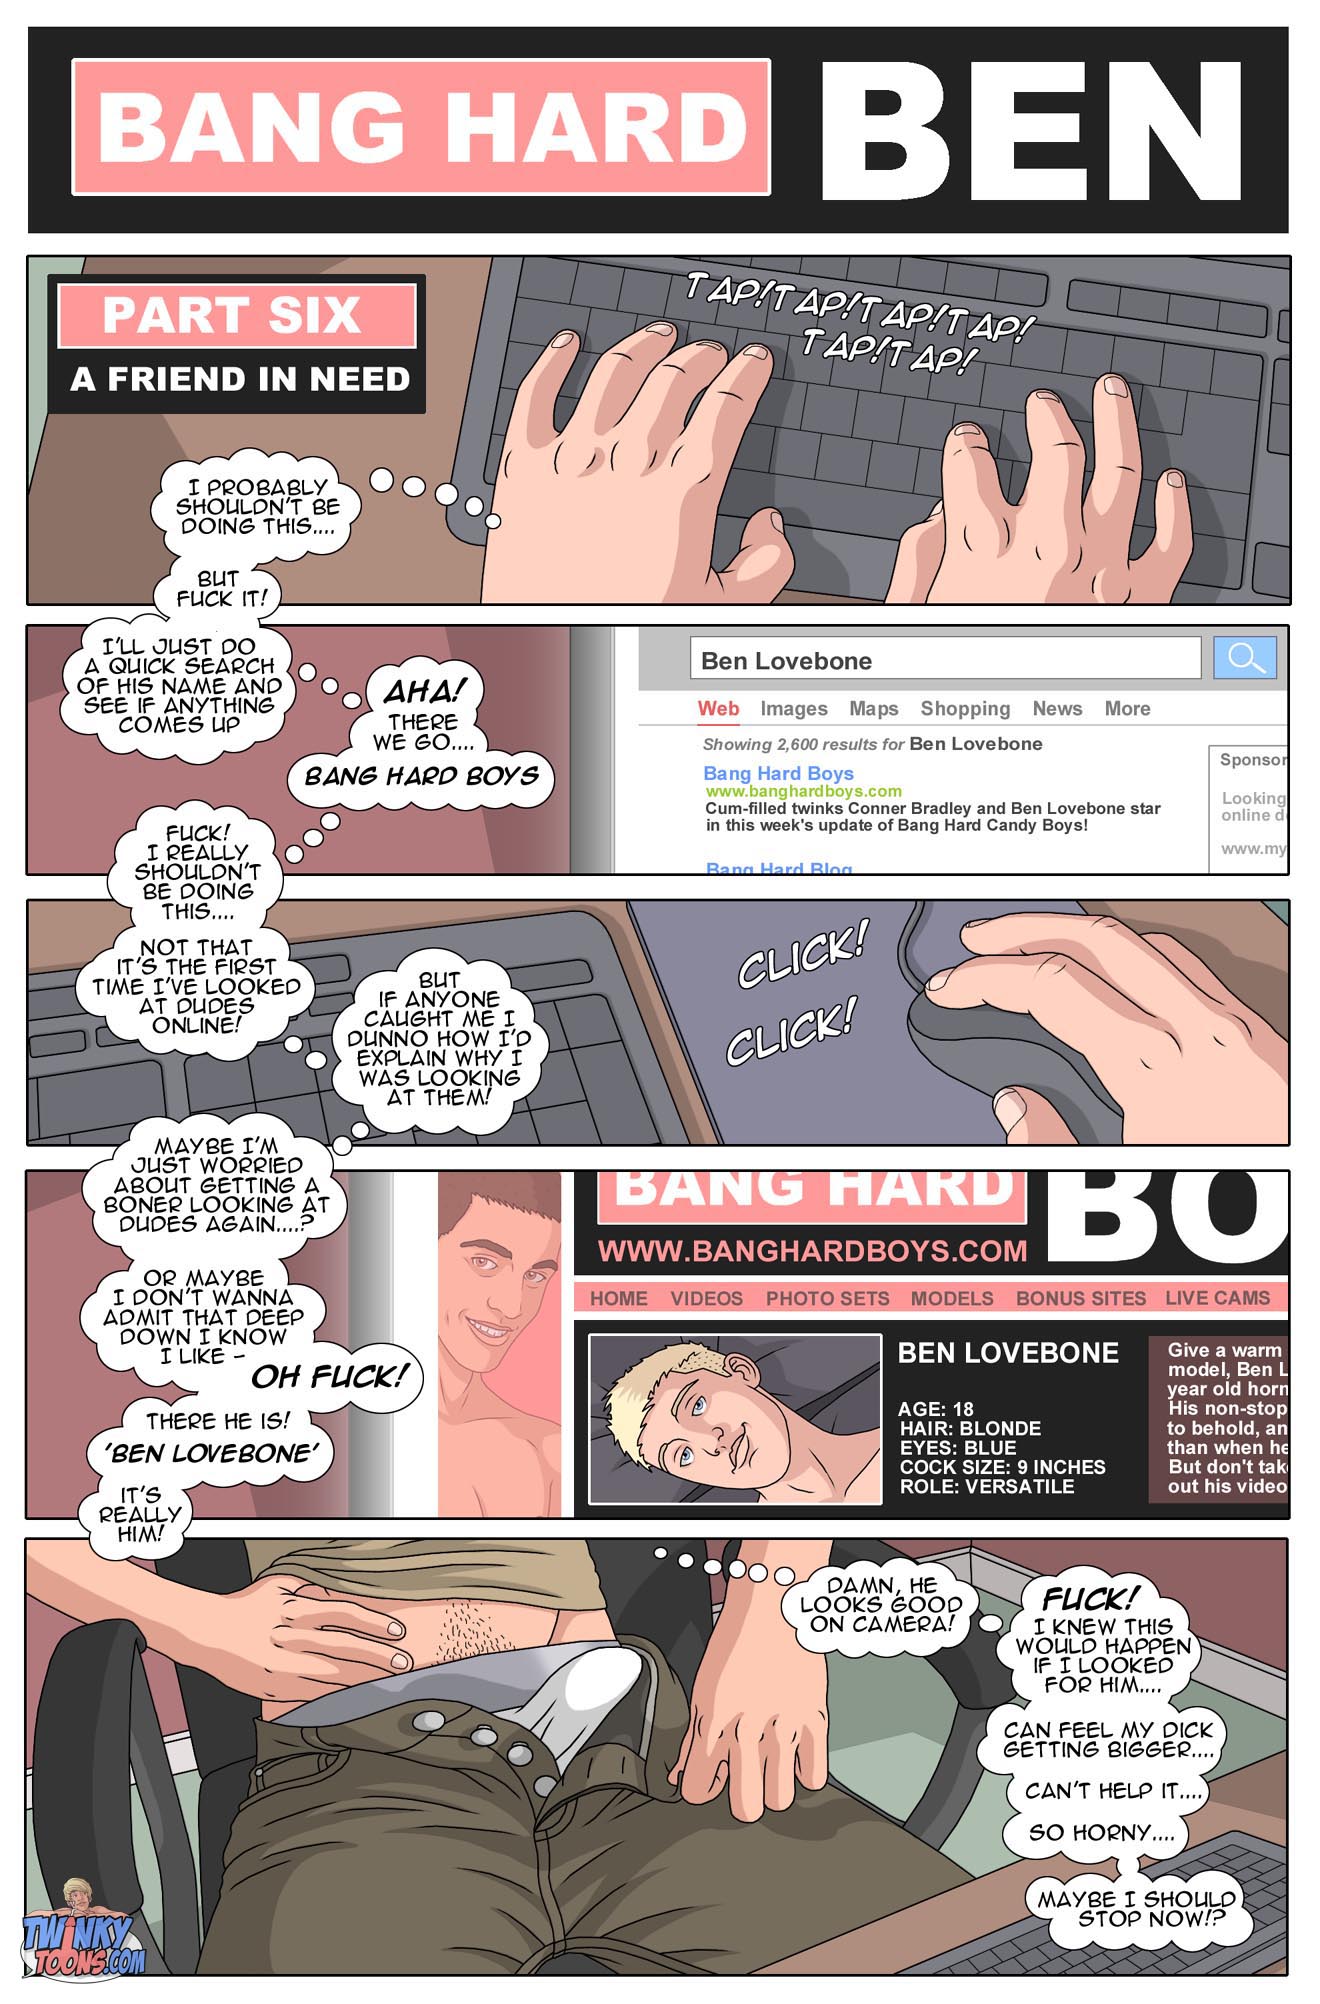 Bang Hard Ben Parts 6 10 Twinks Gay Class Comics Studs Hunks00